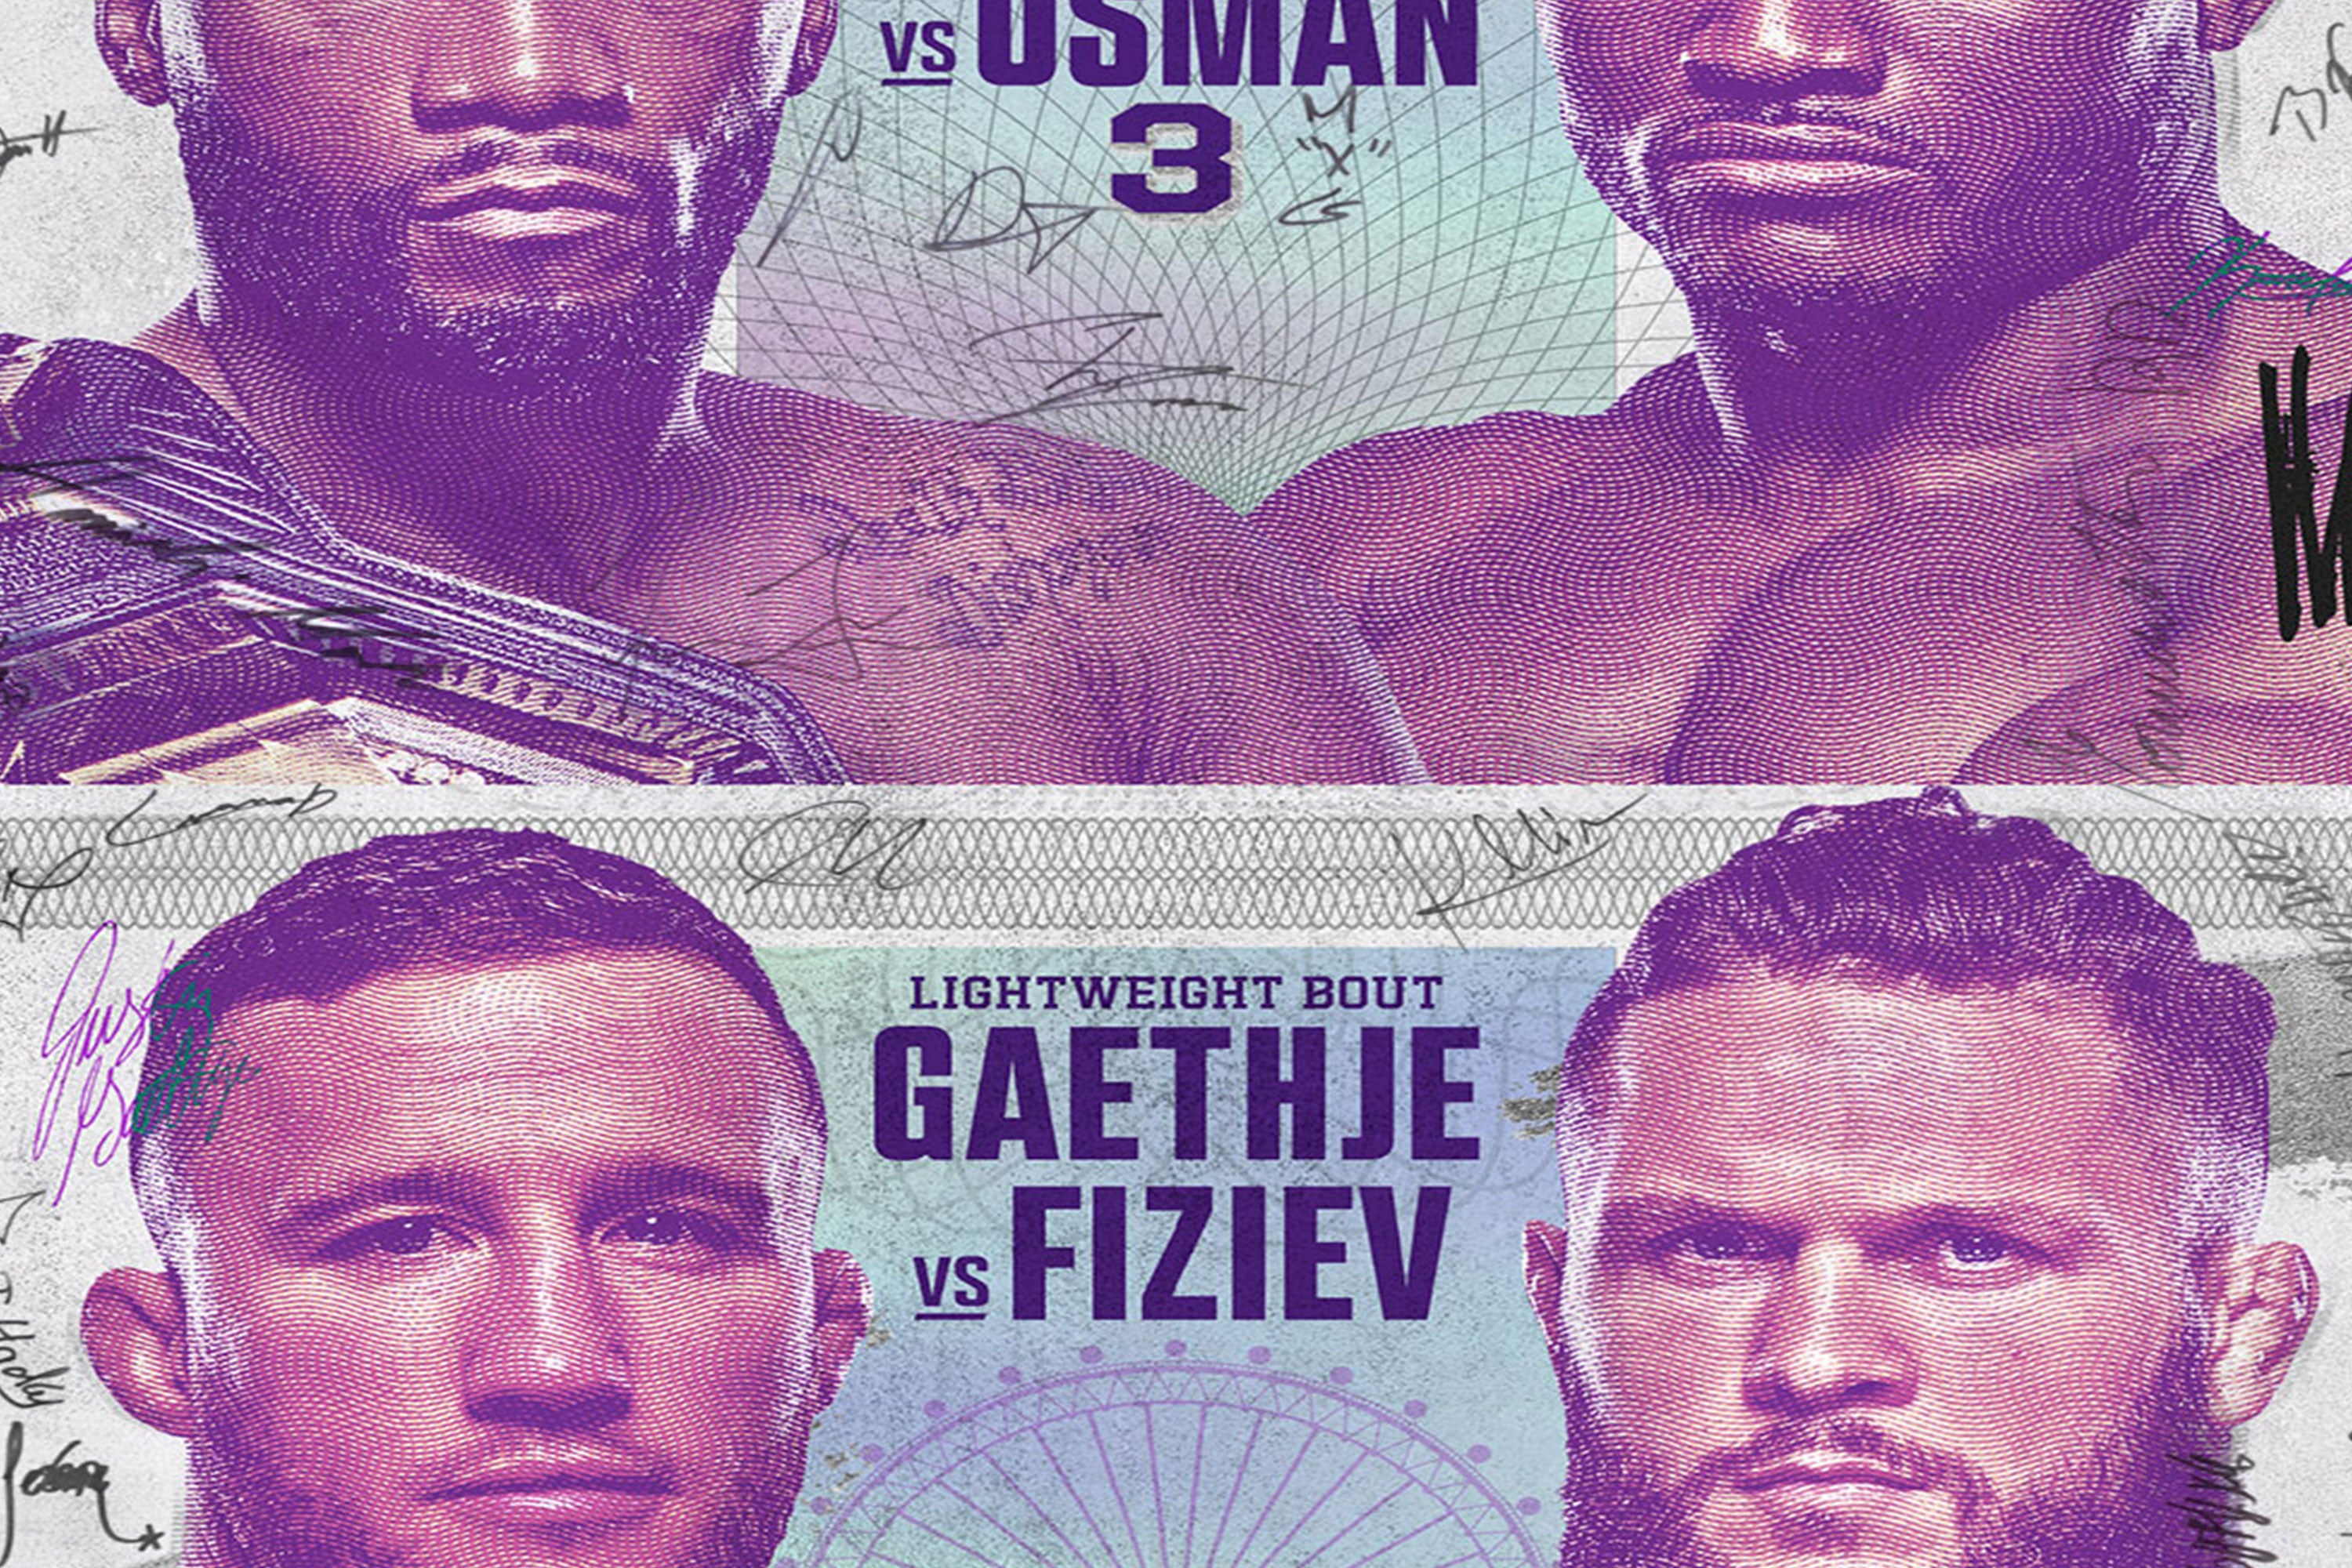 UFC 286: Edwards vs Usman 3 Autographed Event Poster